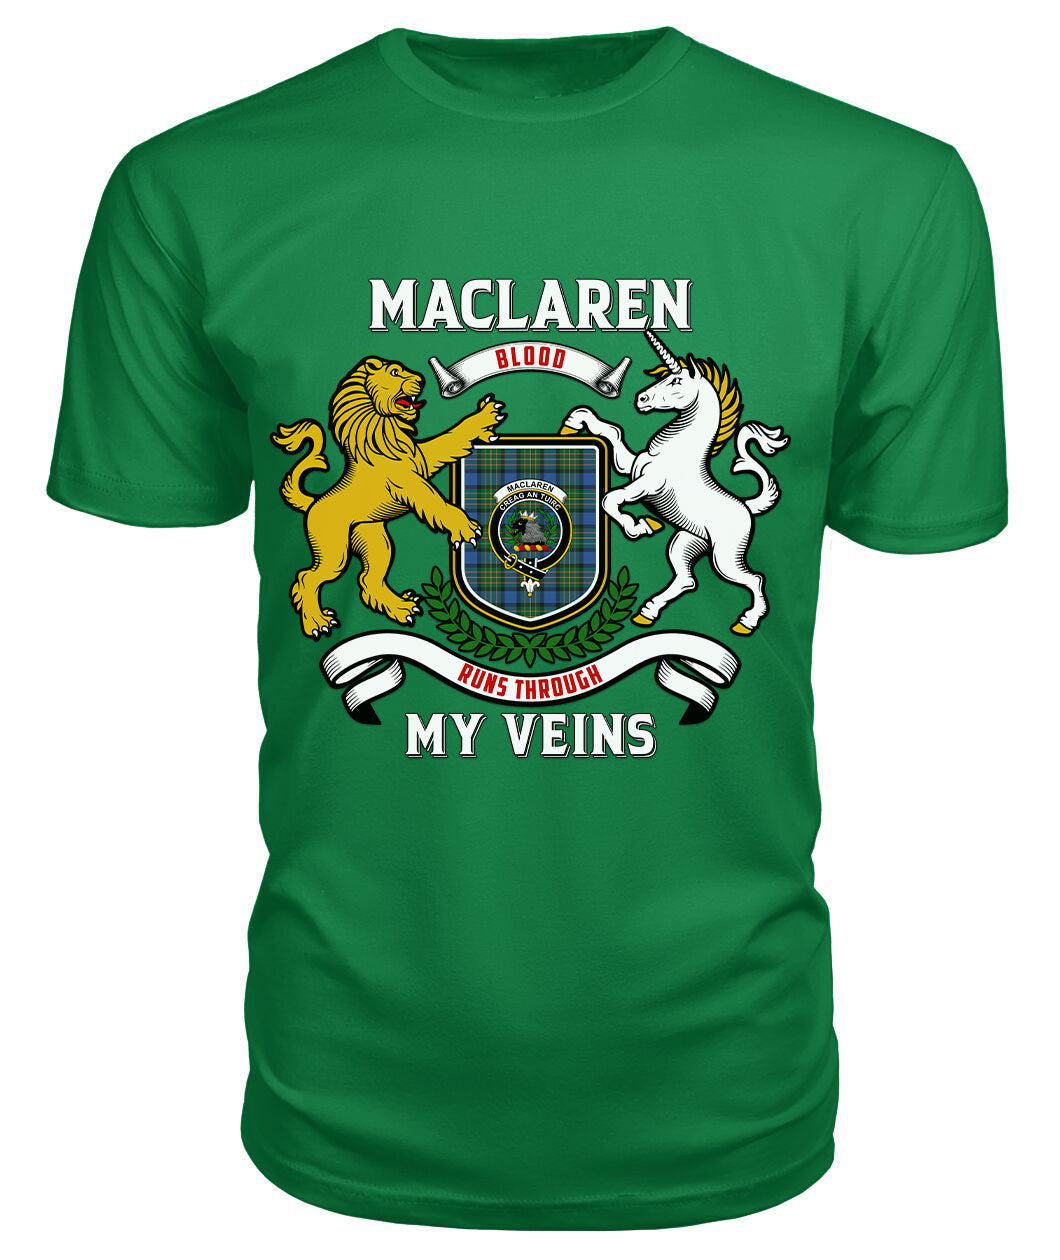 MacLaren Ancient Tartan Crest 2D T-shirt - Blood Runs Through My Veins Style